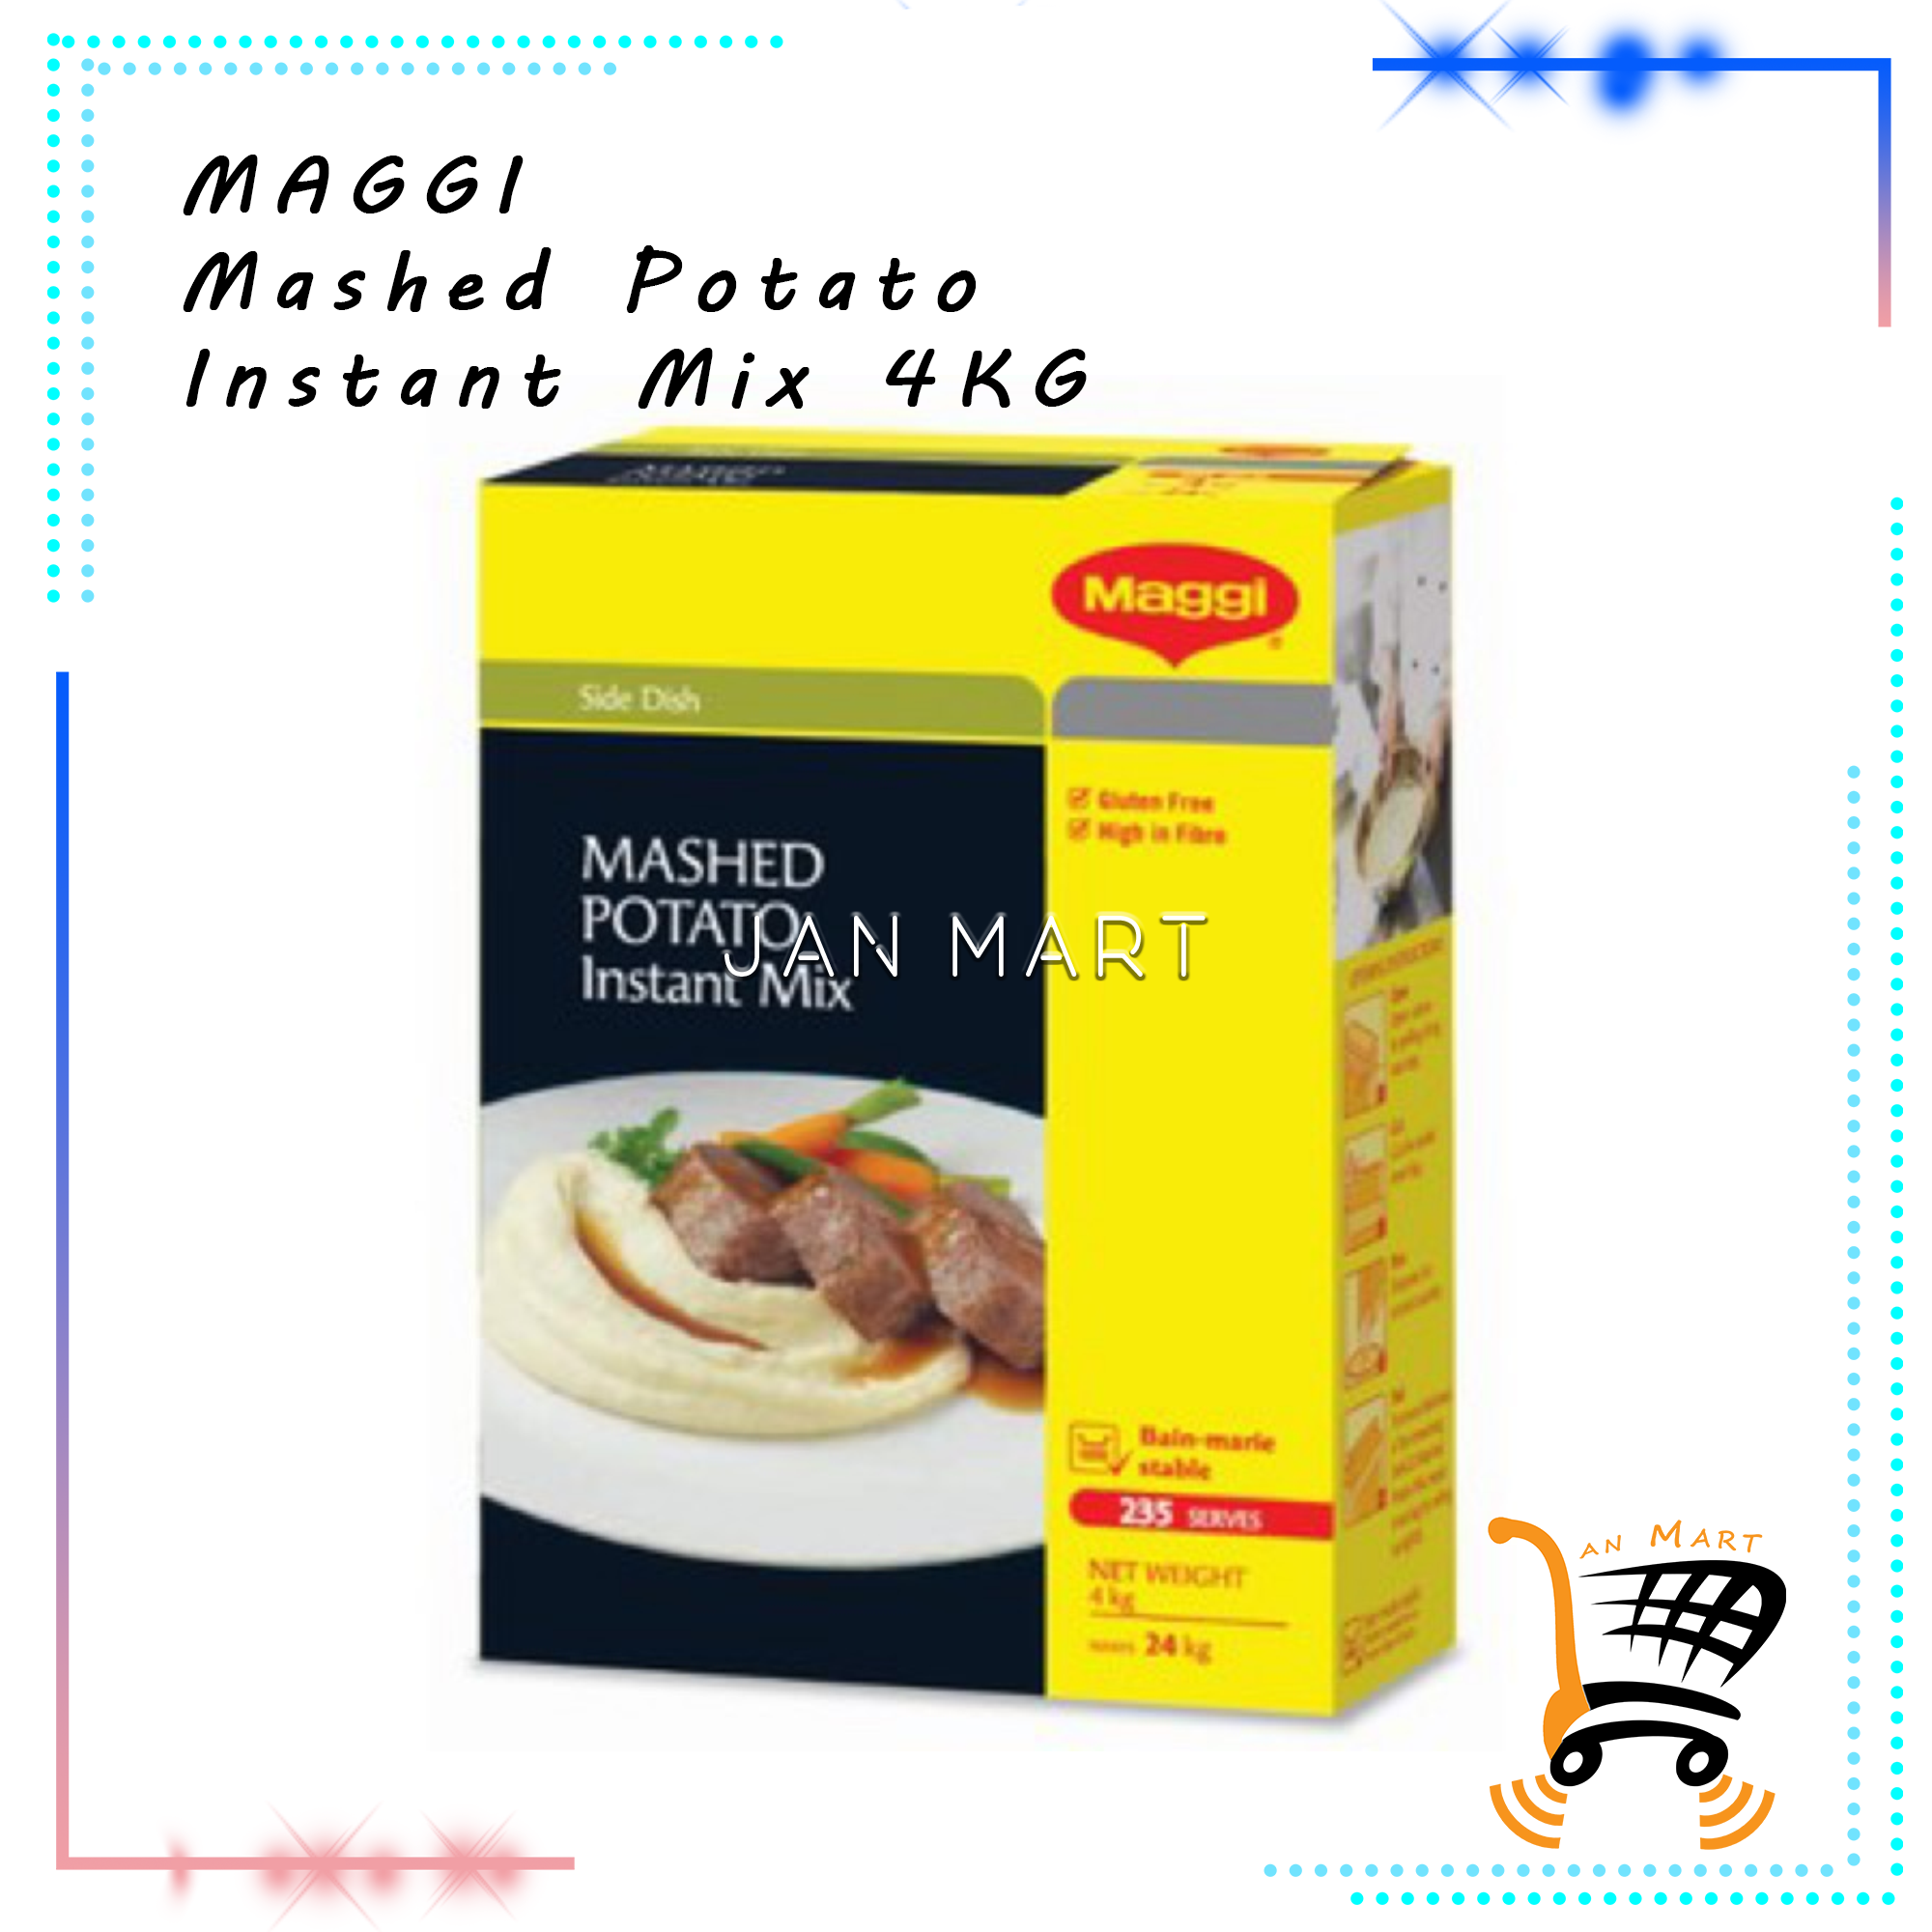 MAGGI Mashed Potato Instant Mix 4KG